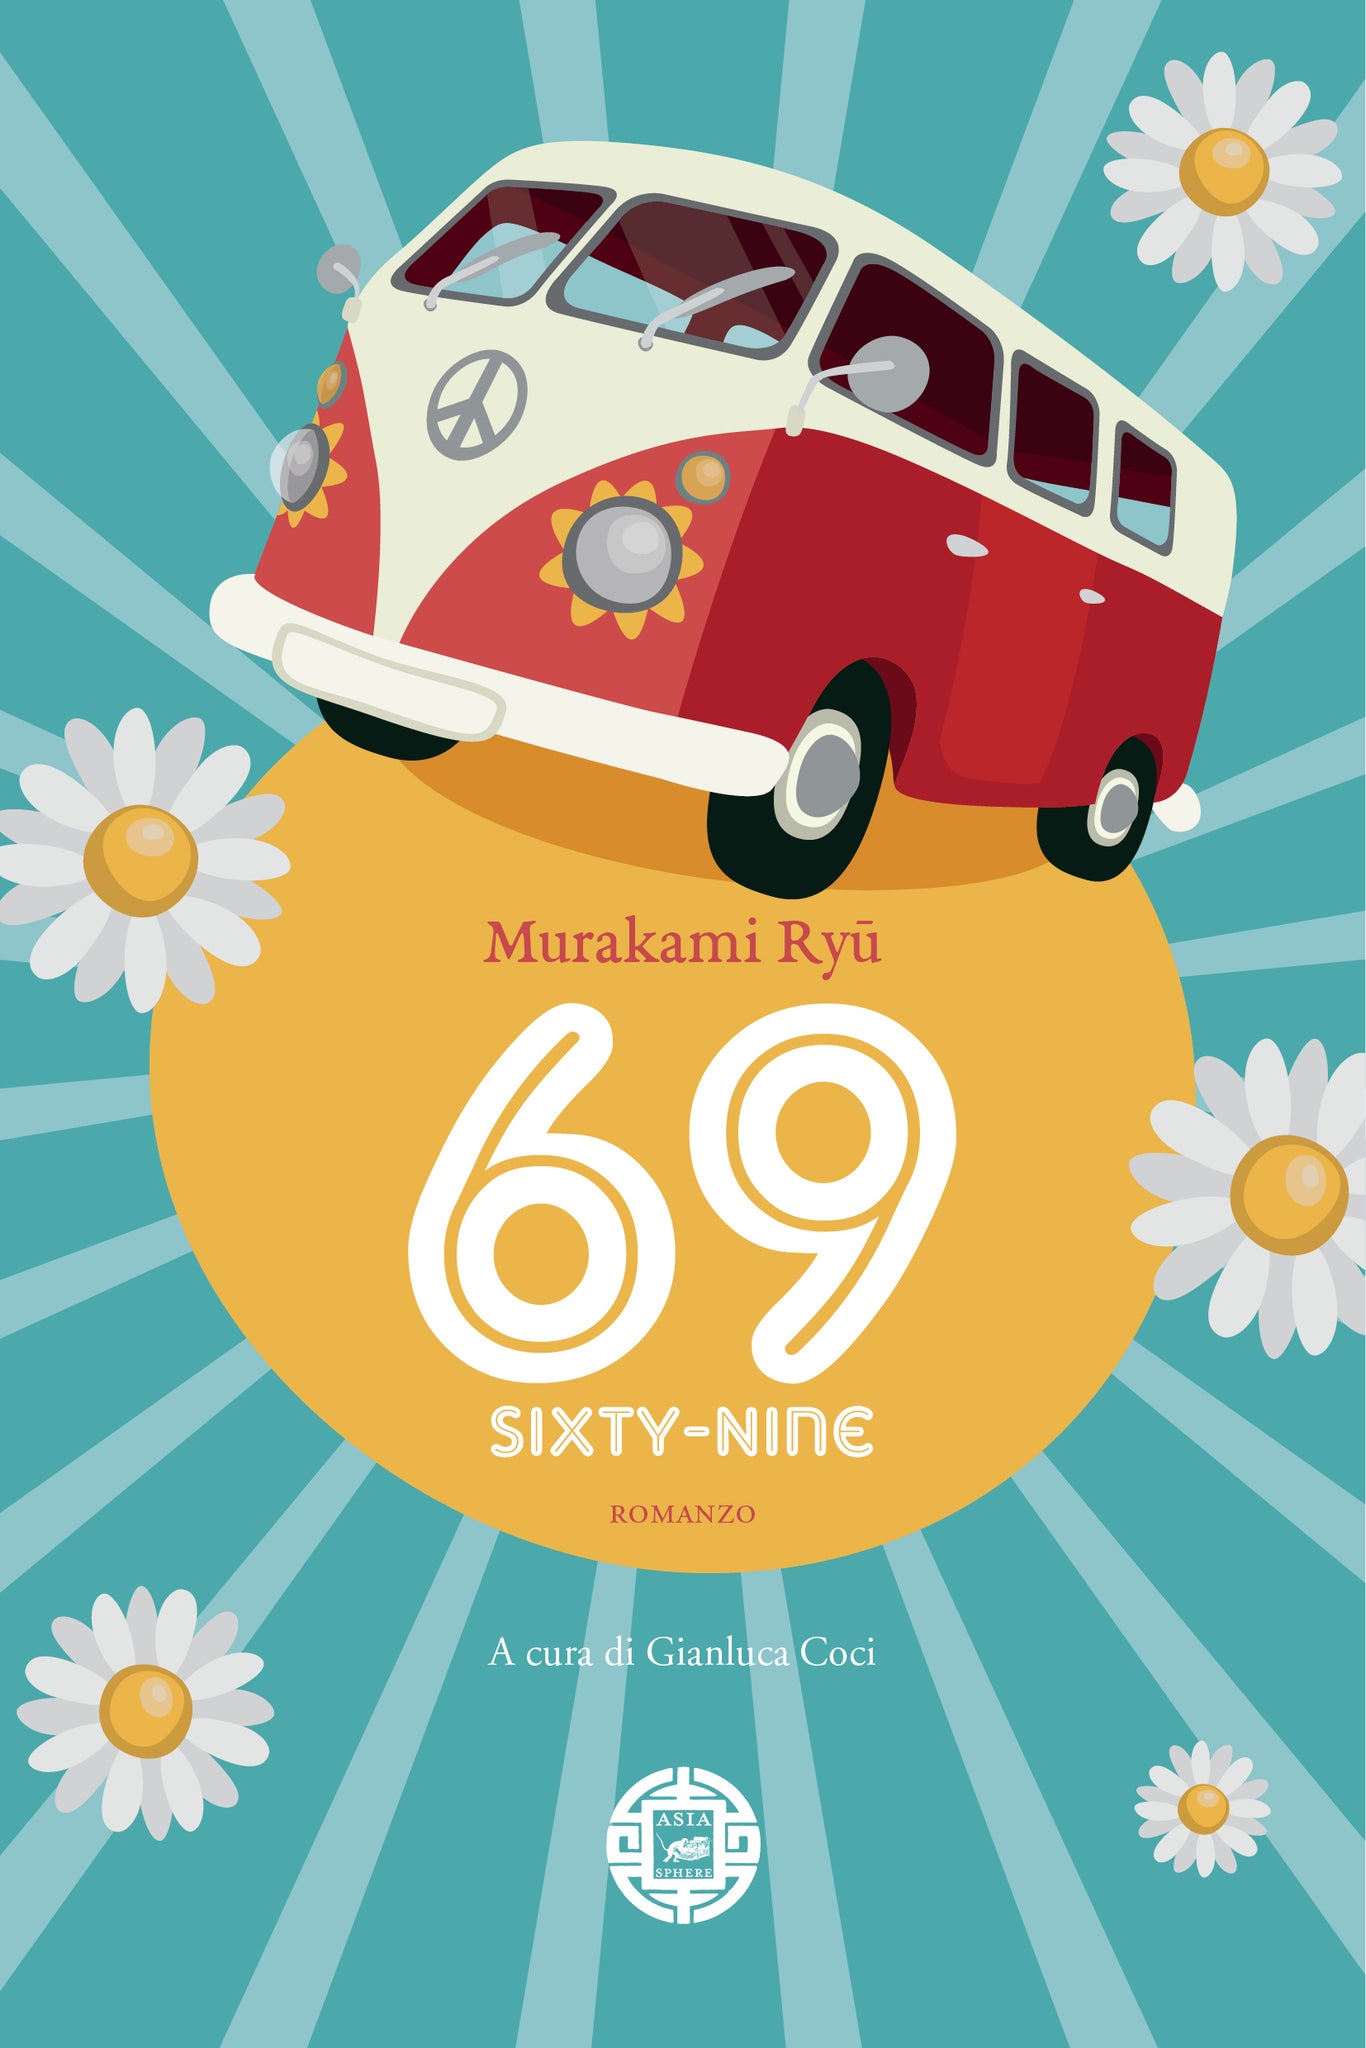 69 SIXTY-NINE